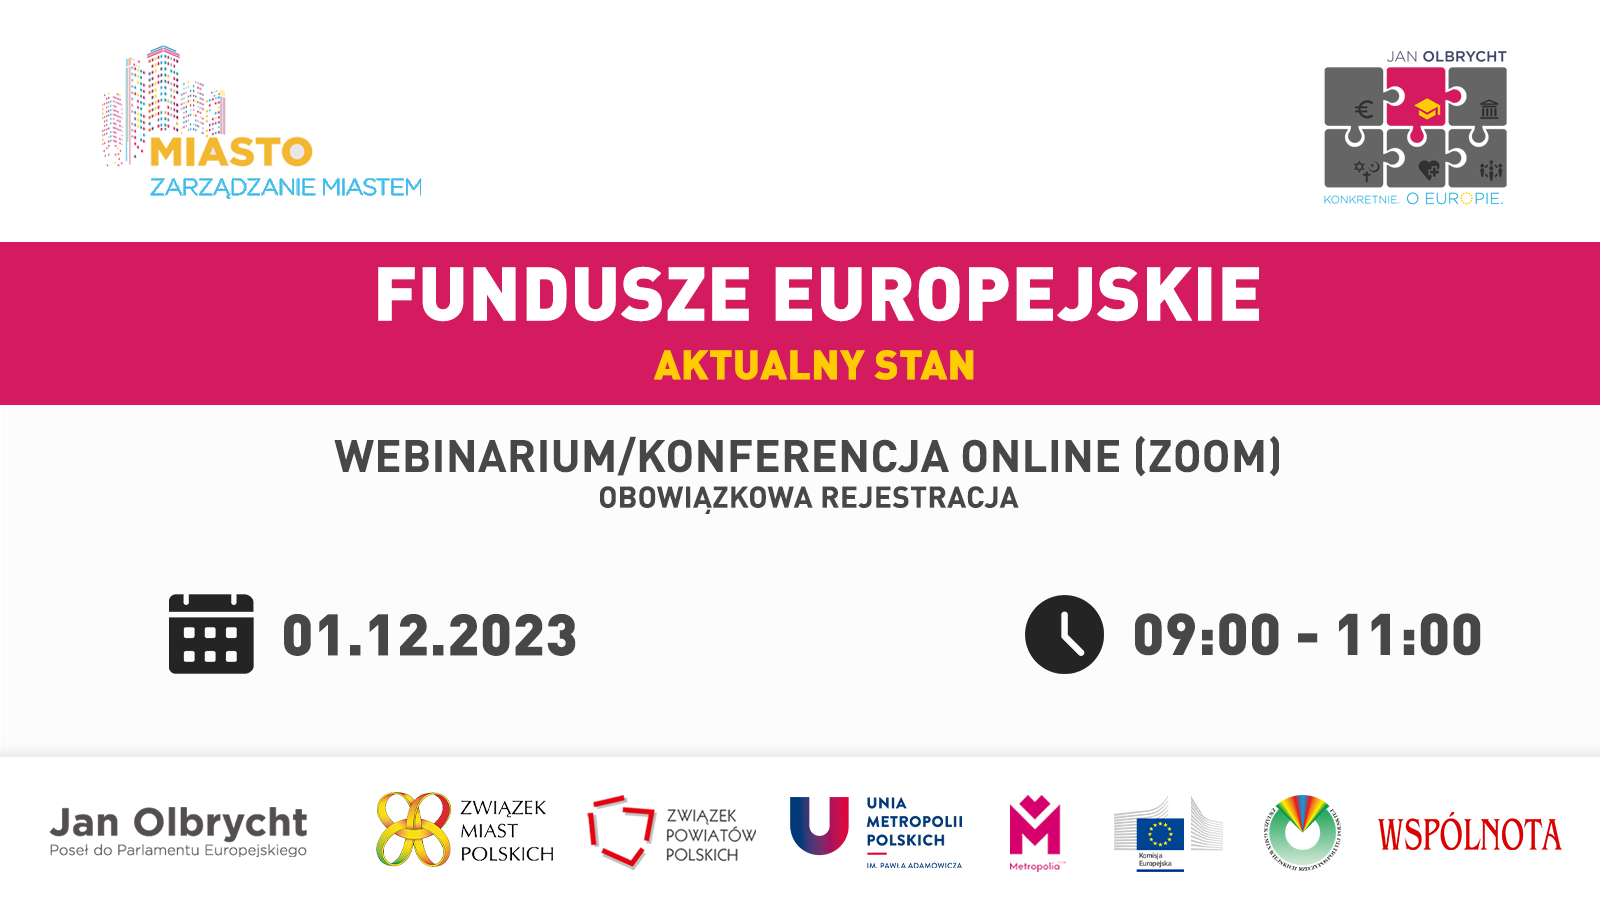 Fundusze europejskie - aktualny stan, 1 grudnia 2023 r., online